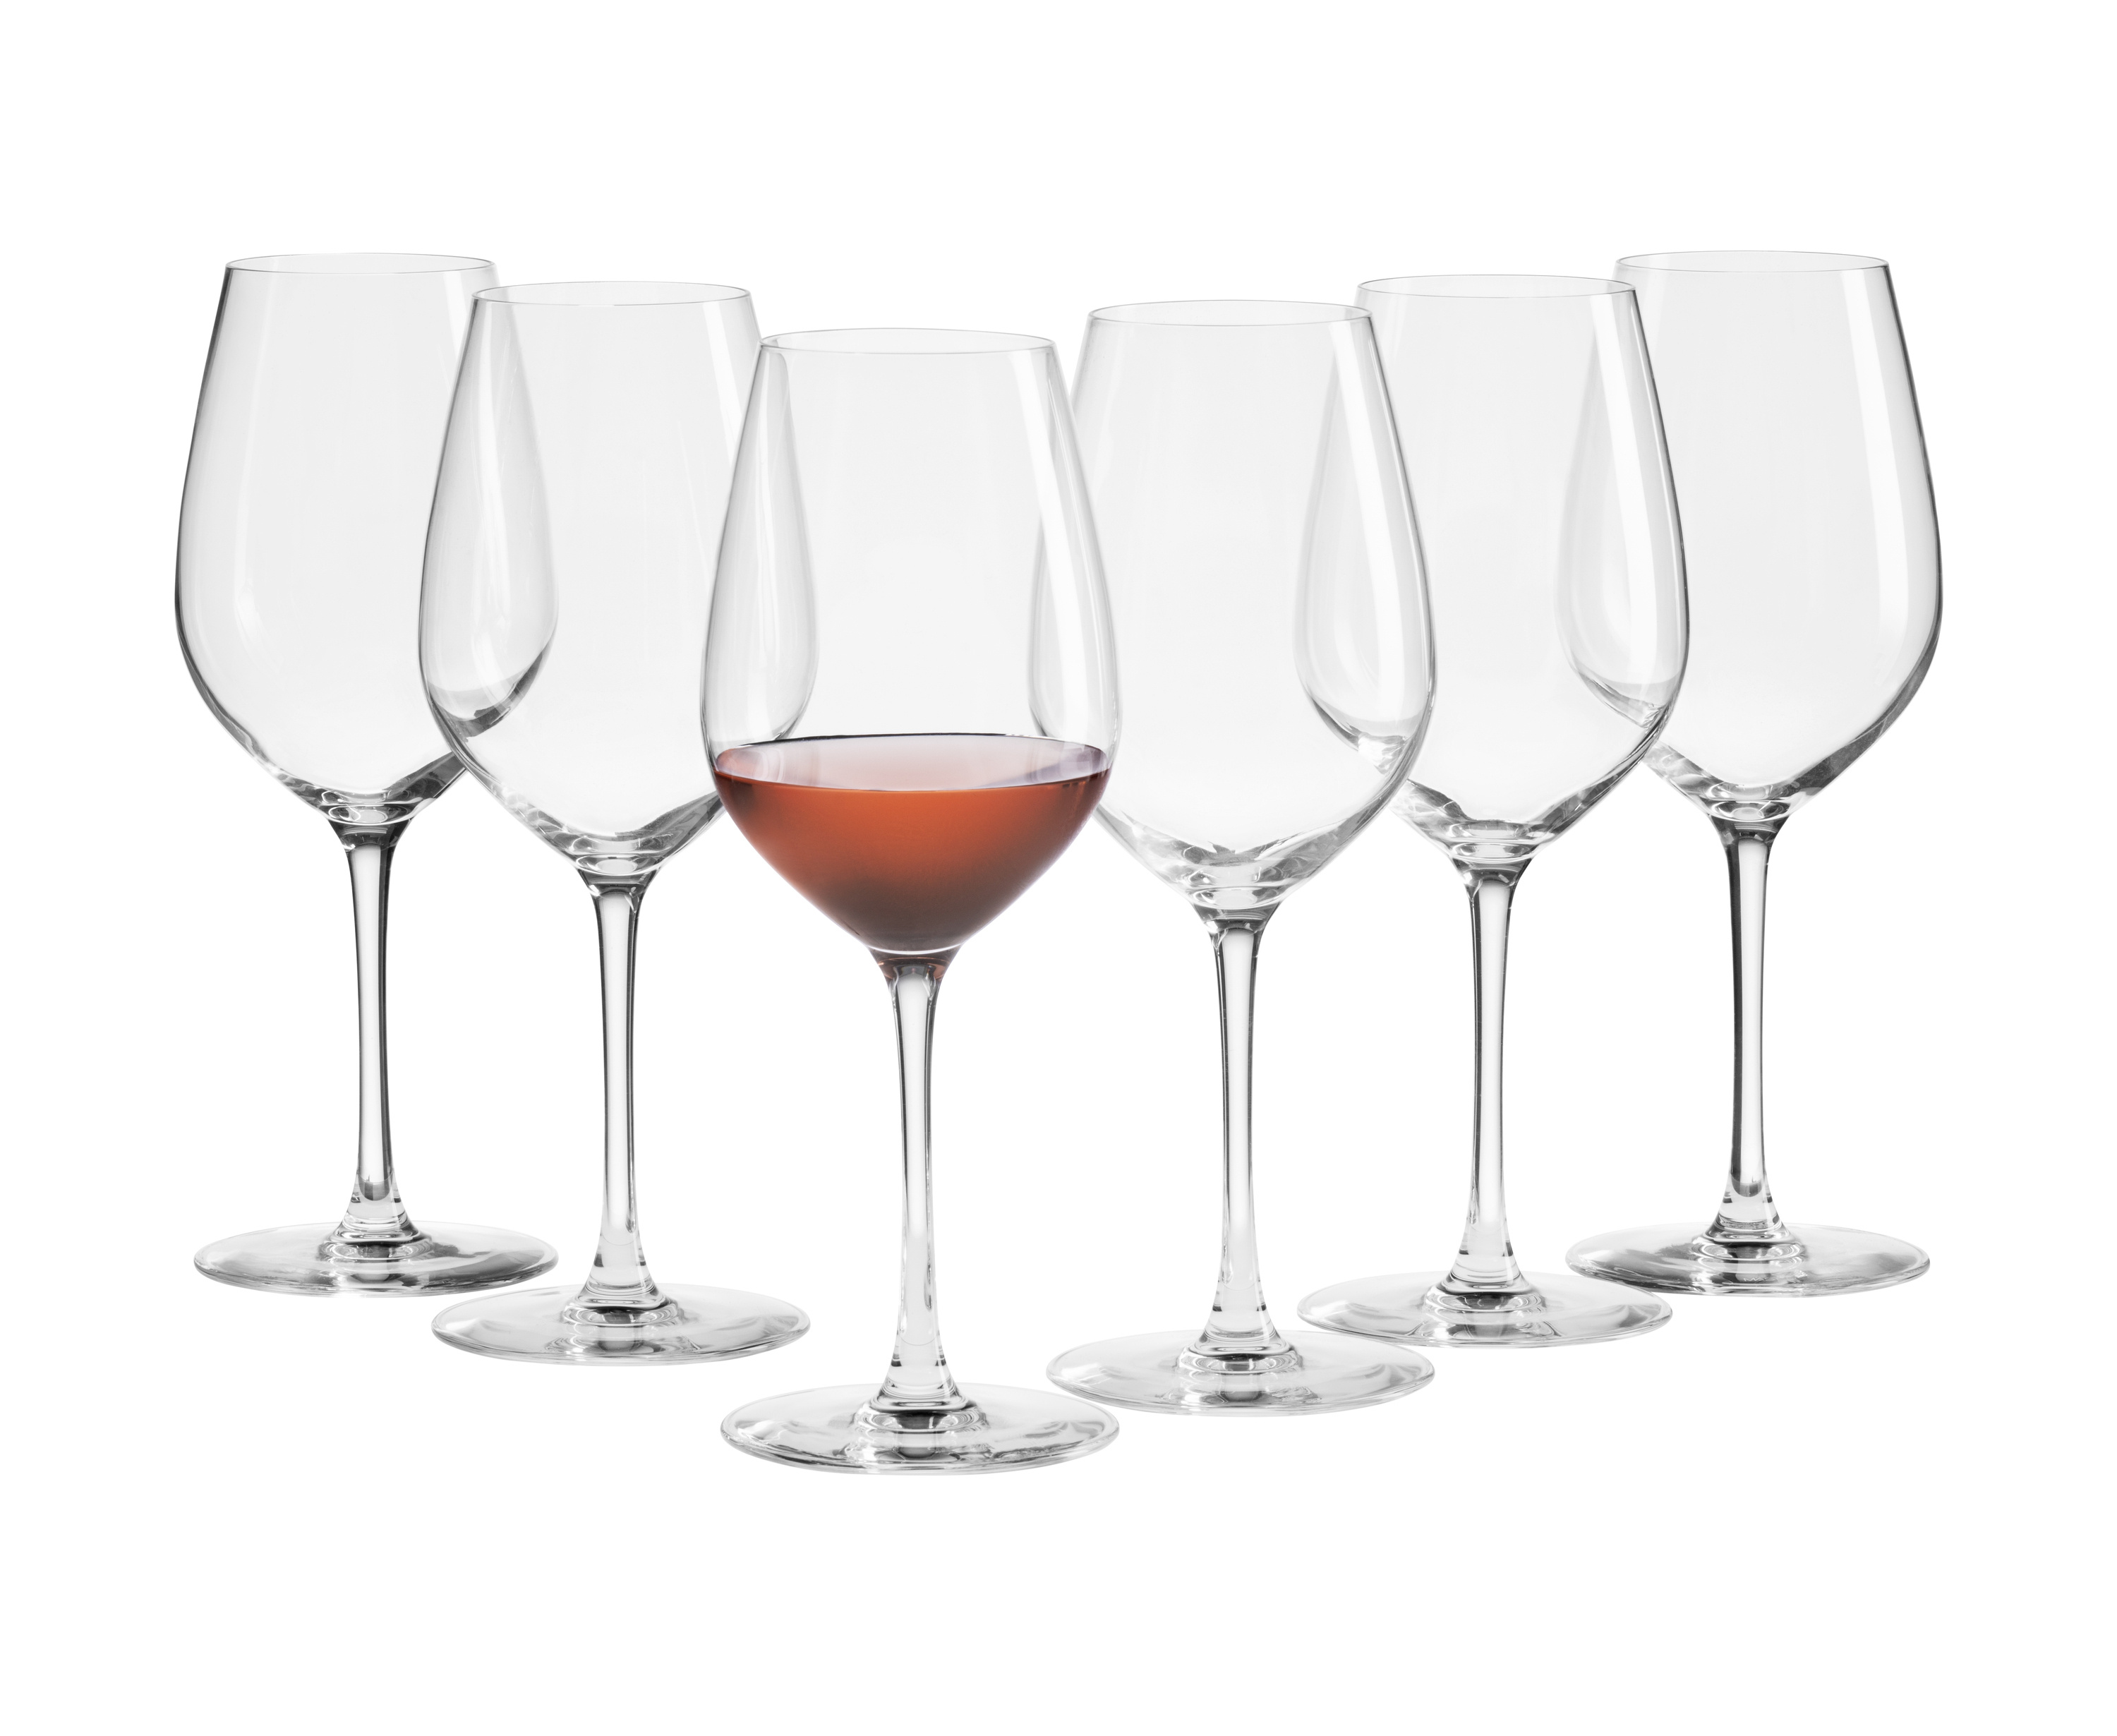 6 x Weißweingläser Krosno edele Weingläser Weinglas Gläser Set Glas Kristall 